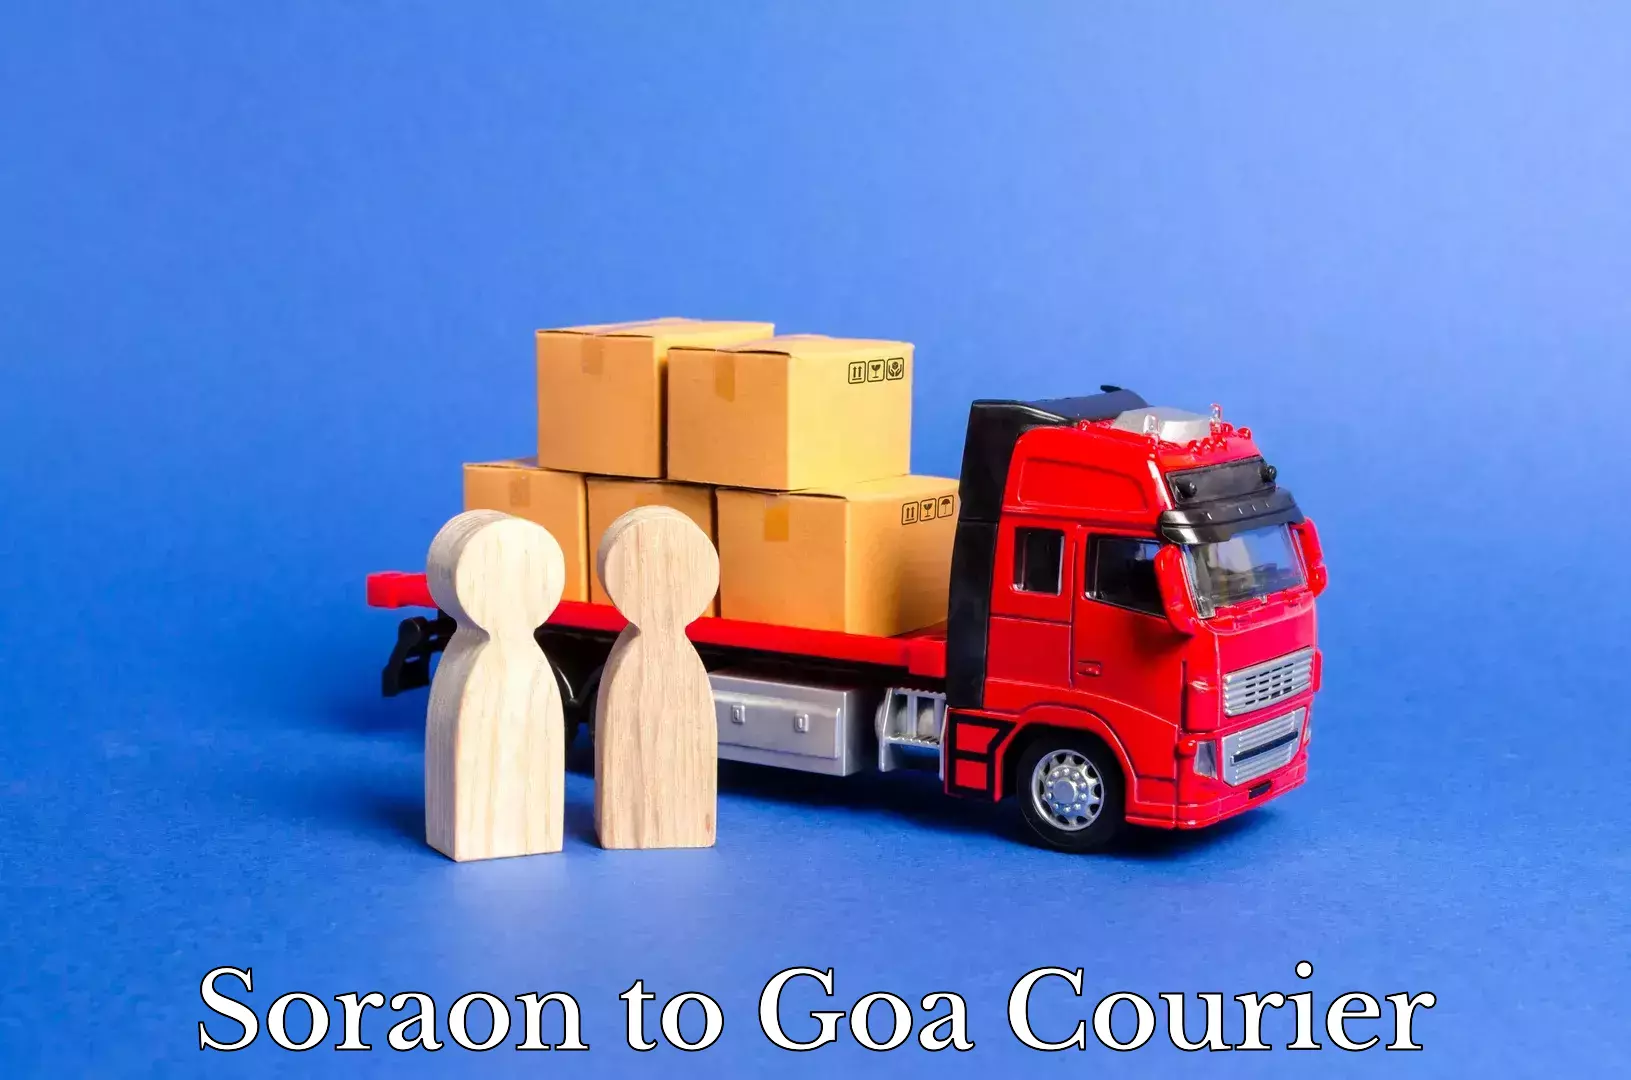 Express courier facilities Soraon to Goa